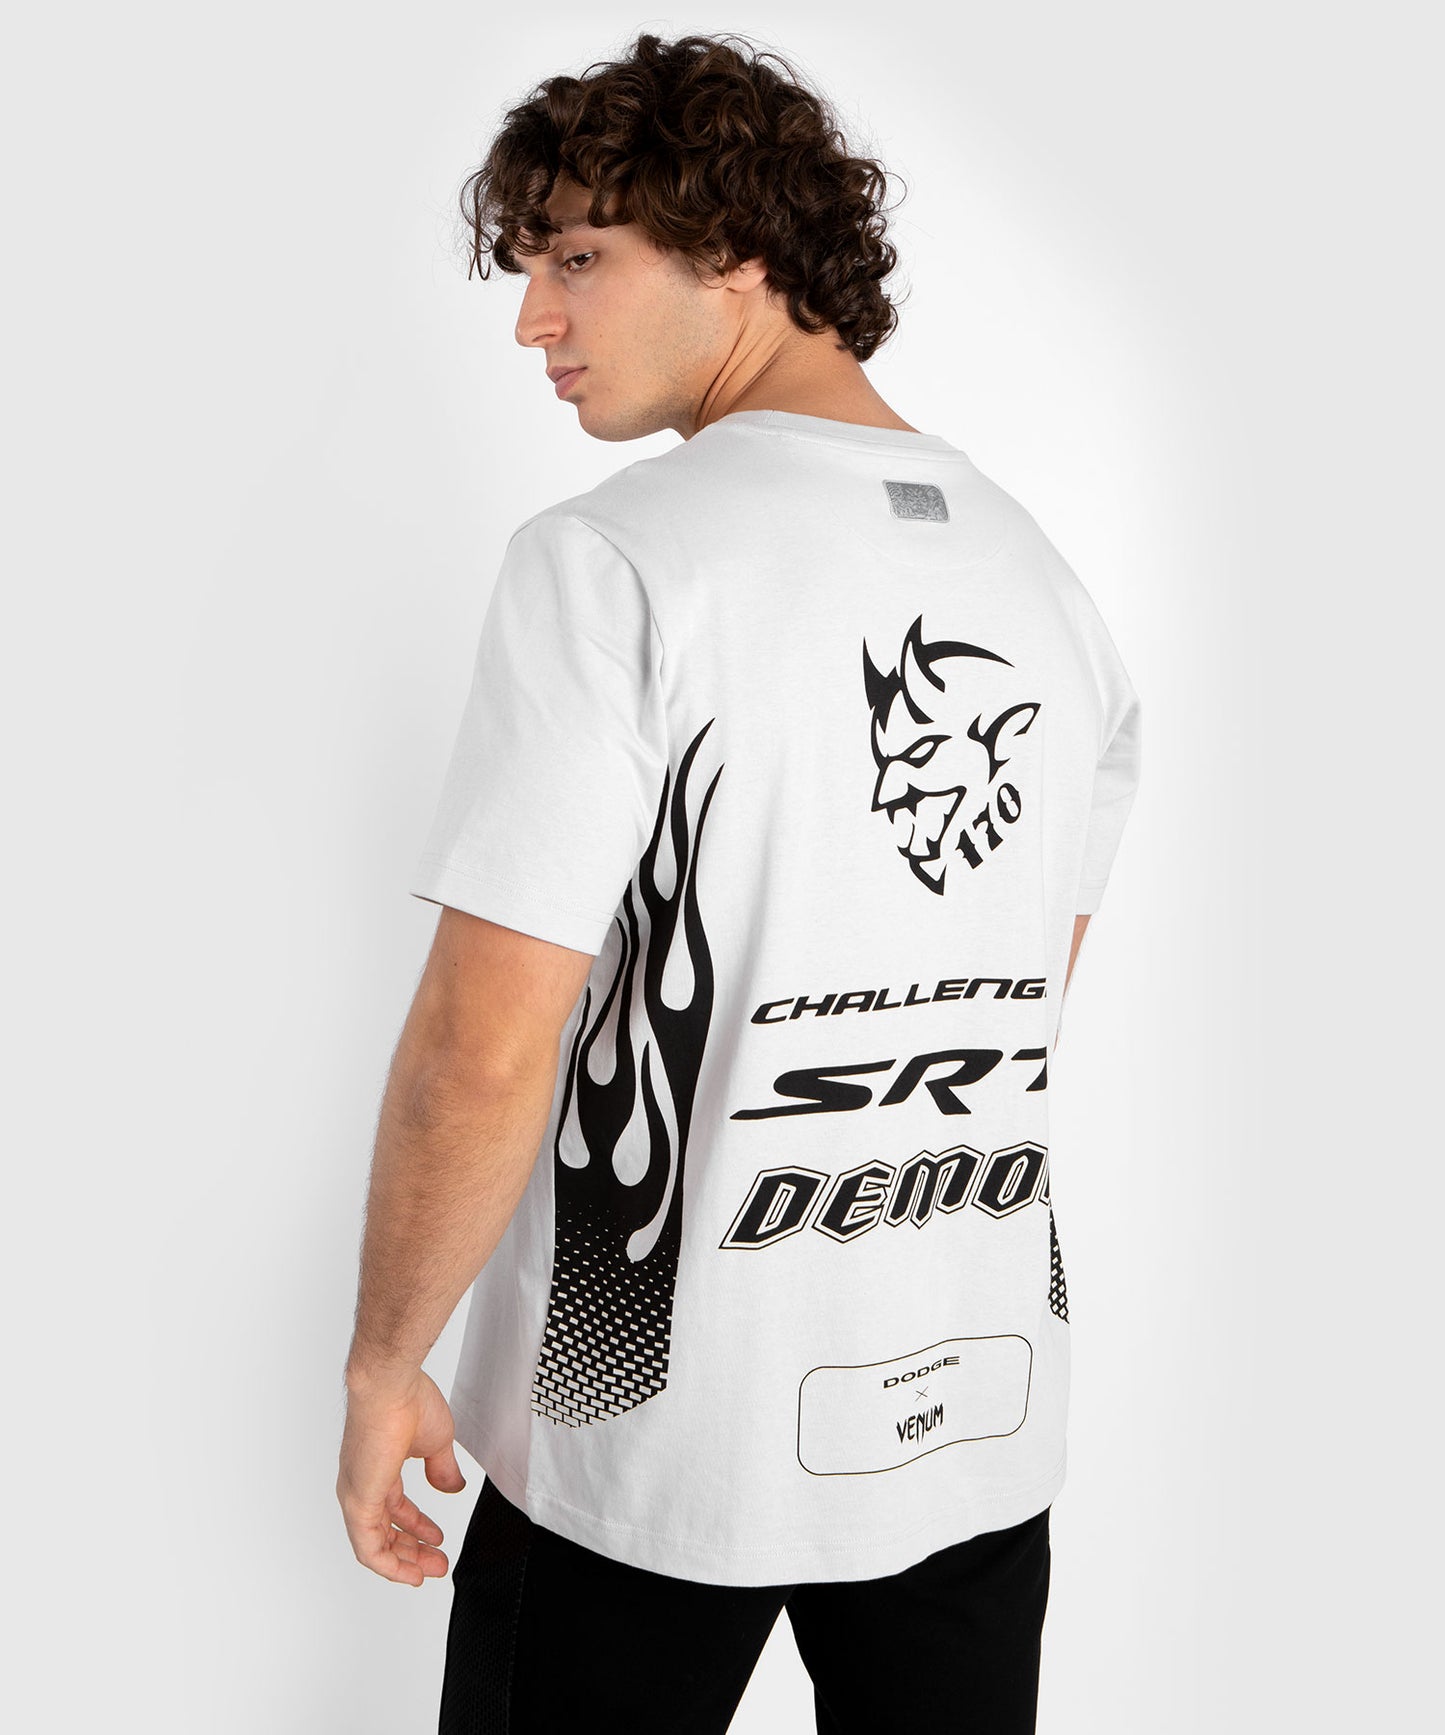 Venum x Dodge Demon 170  Camiseta de hombre - Gris